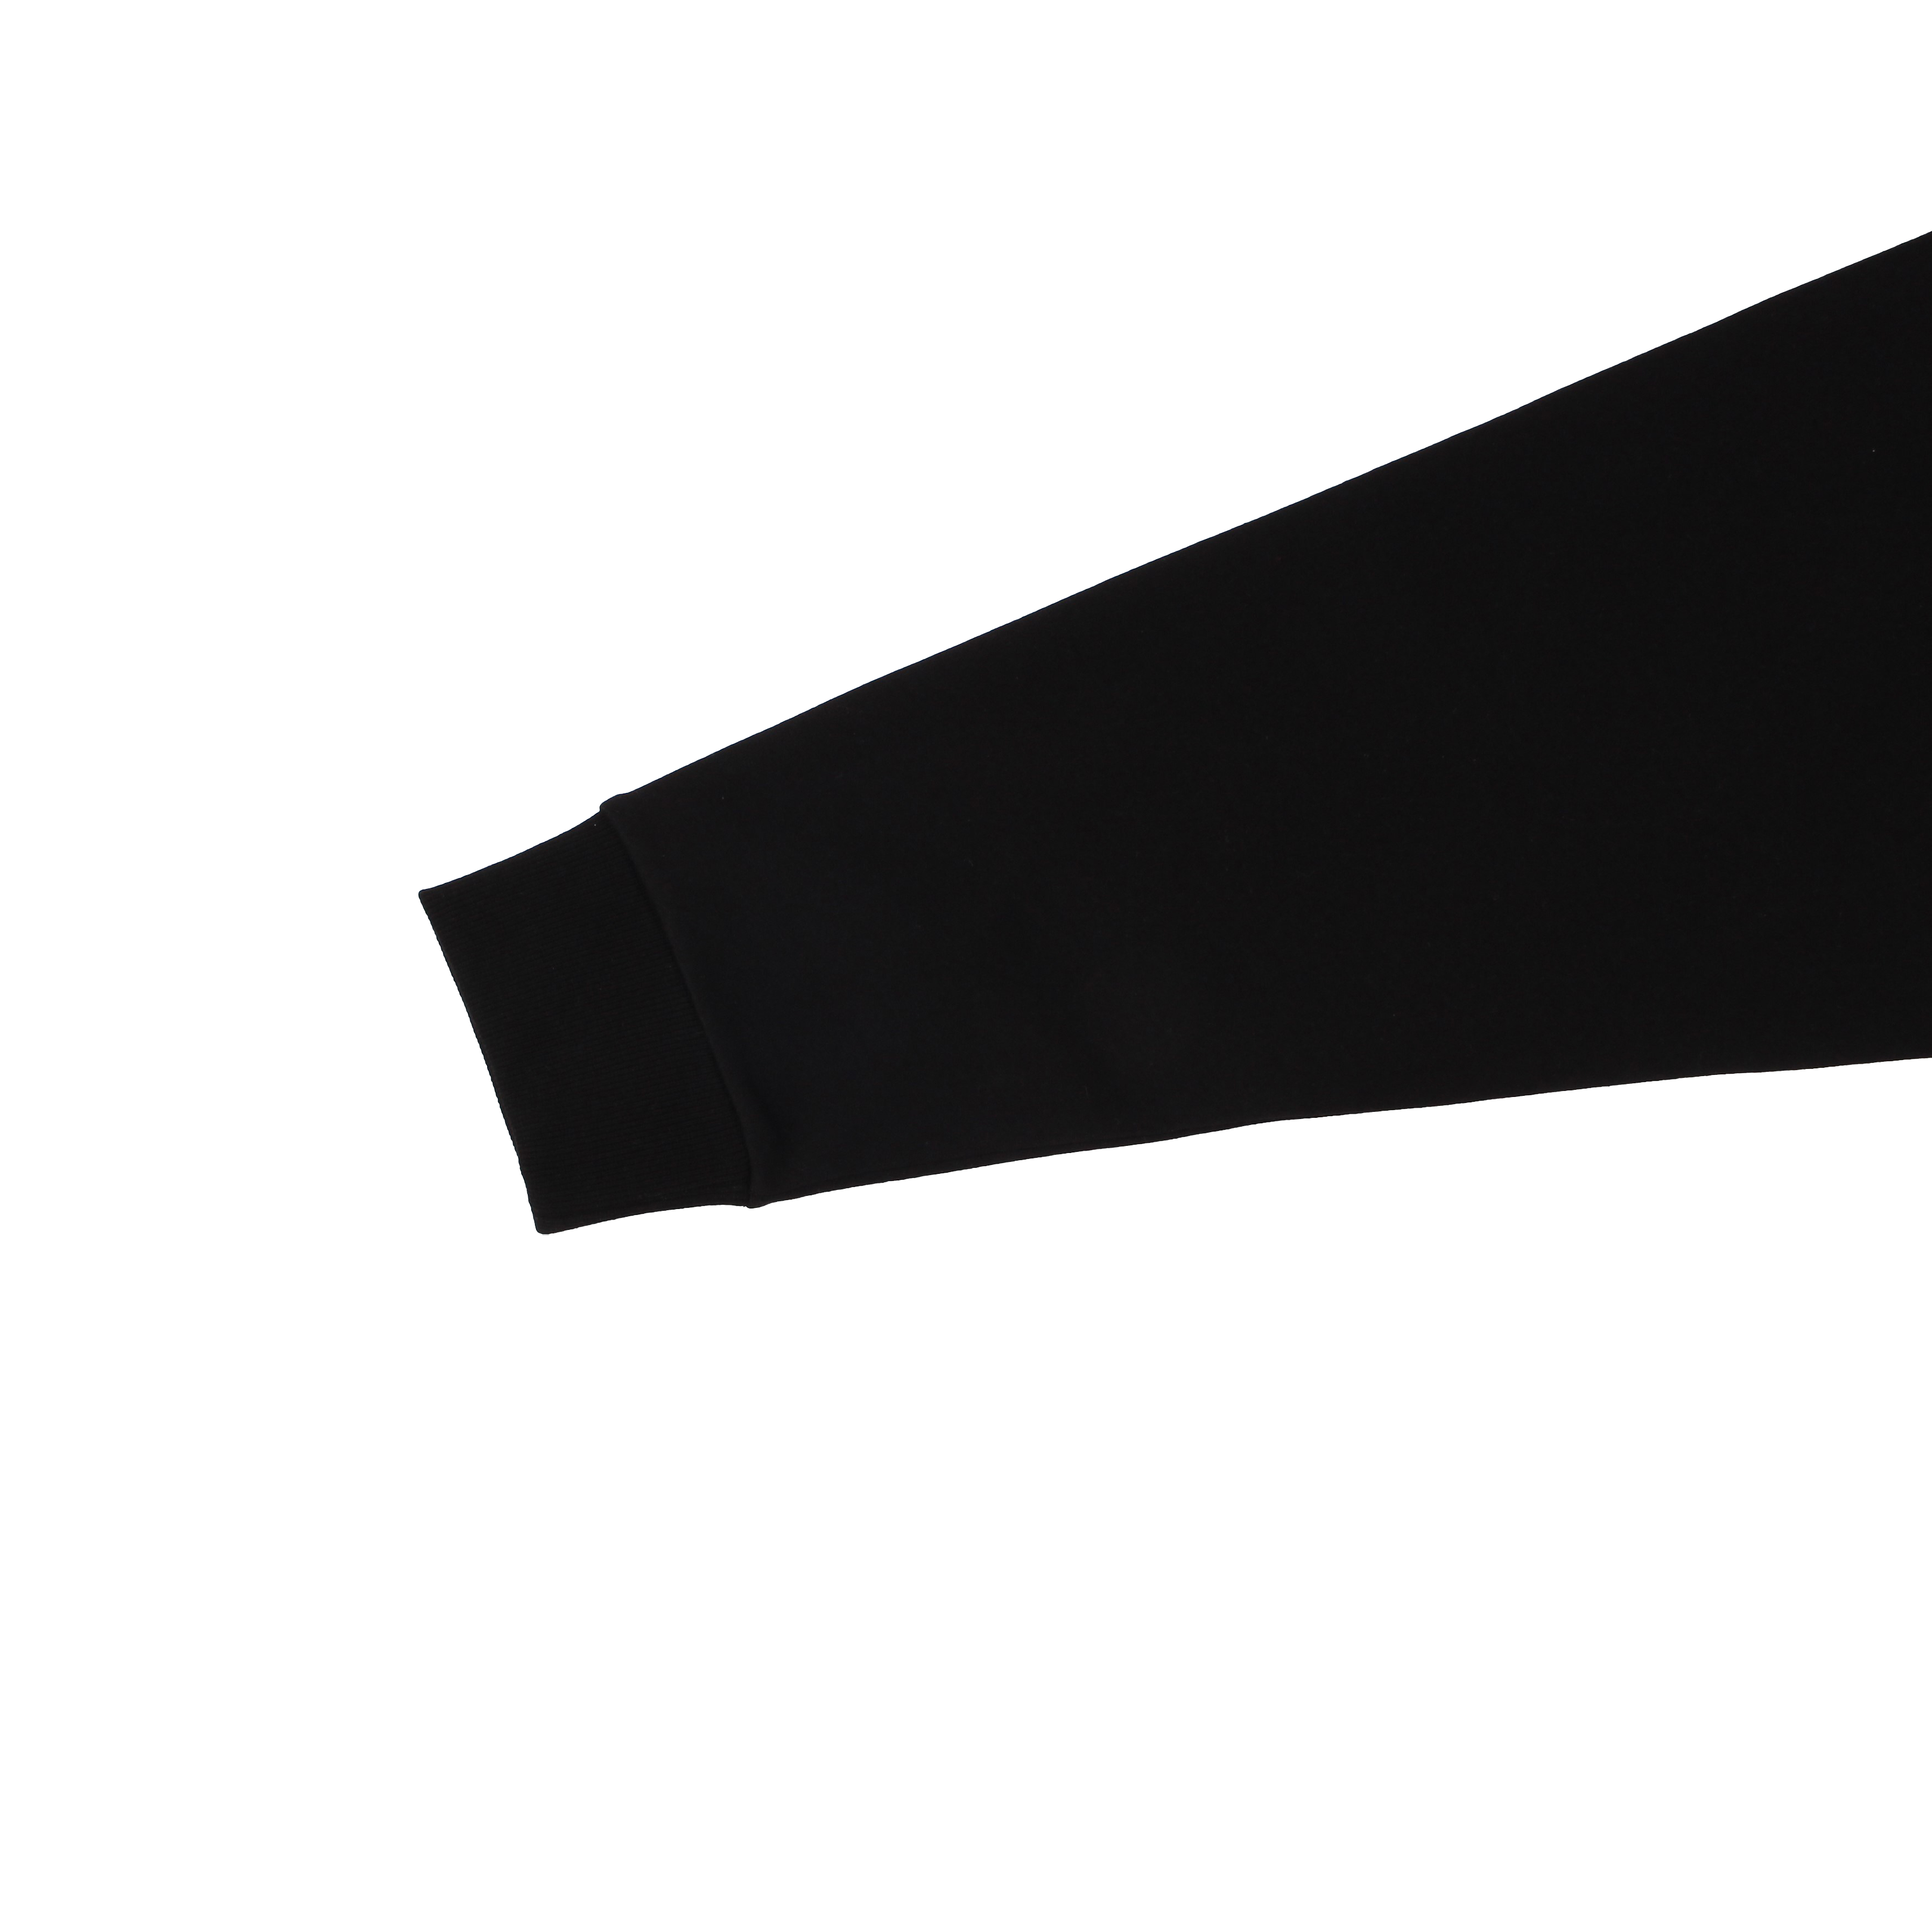 [도선고] 생활체육복 상의 맨투맨(블랙)